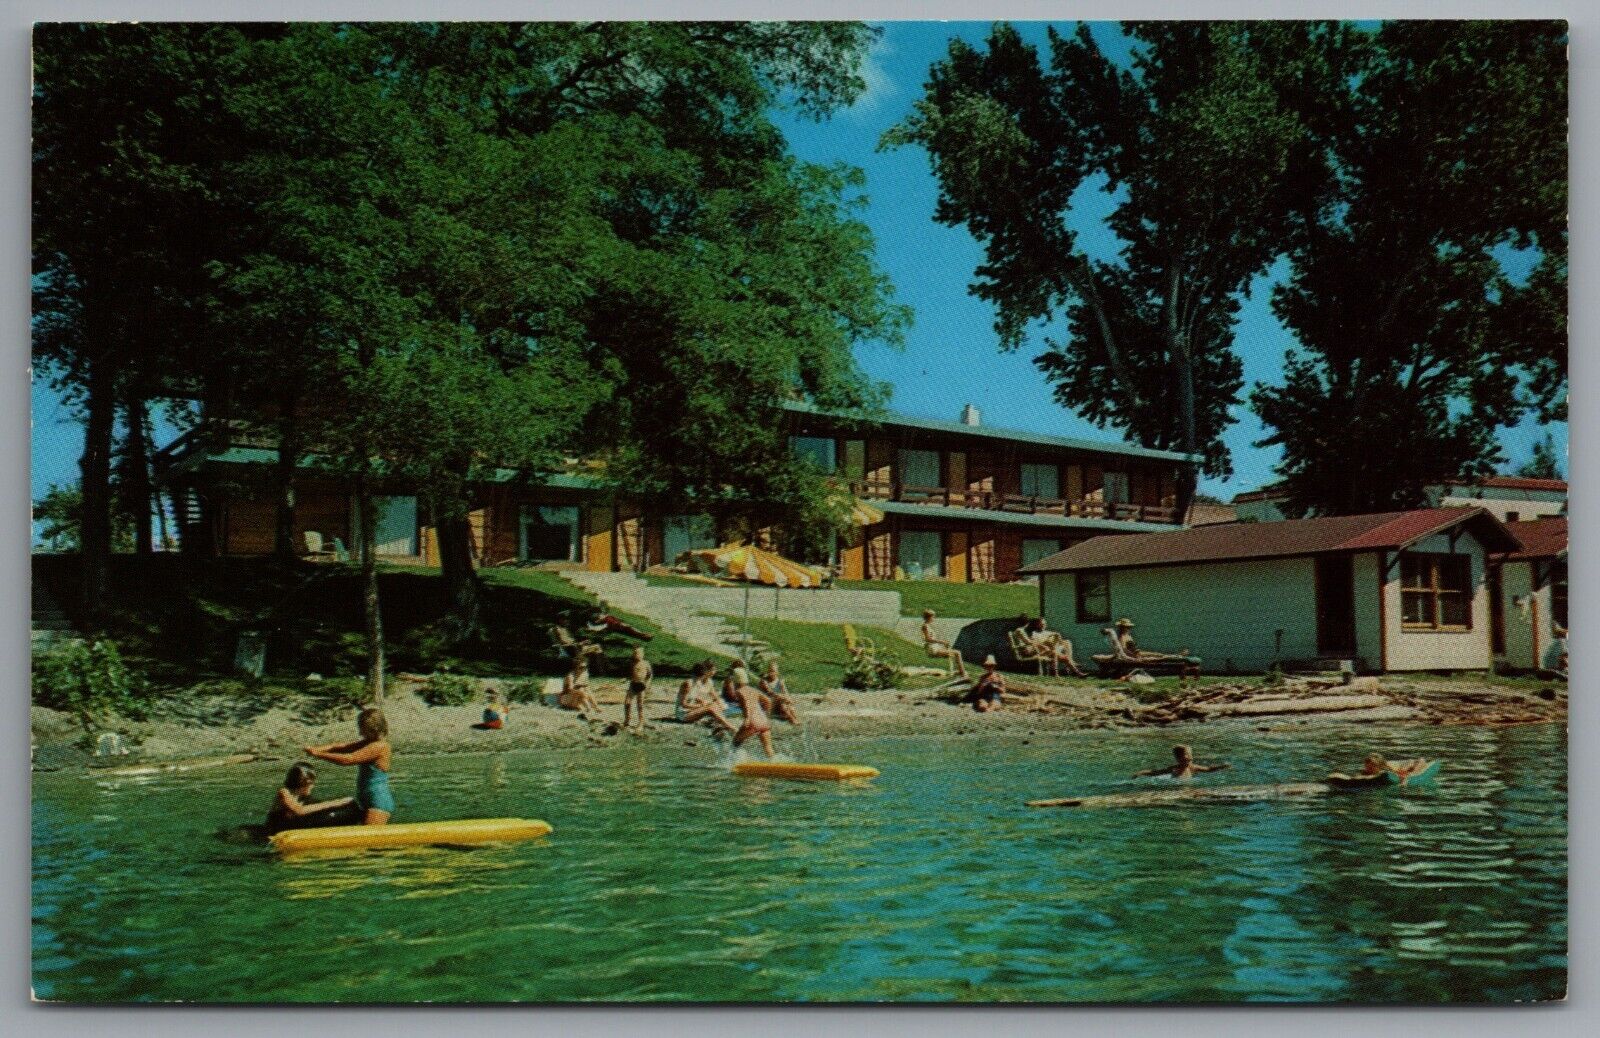 Chelan WA Campbell's Lodge c1959 Lake Chelan Beach Scene Postcard